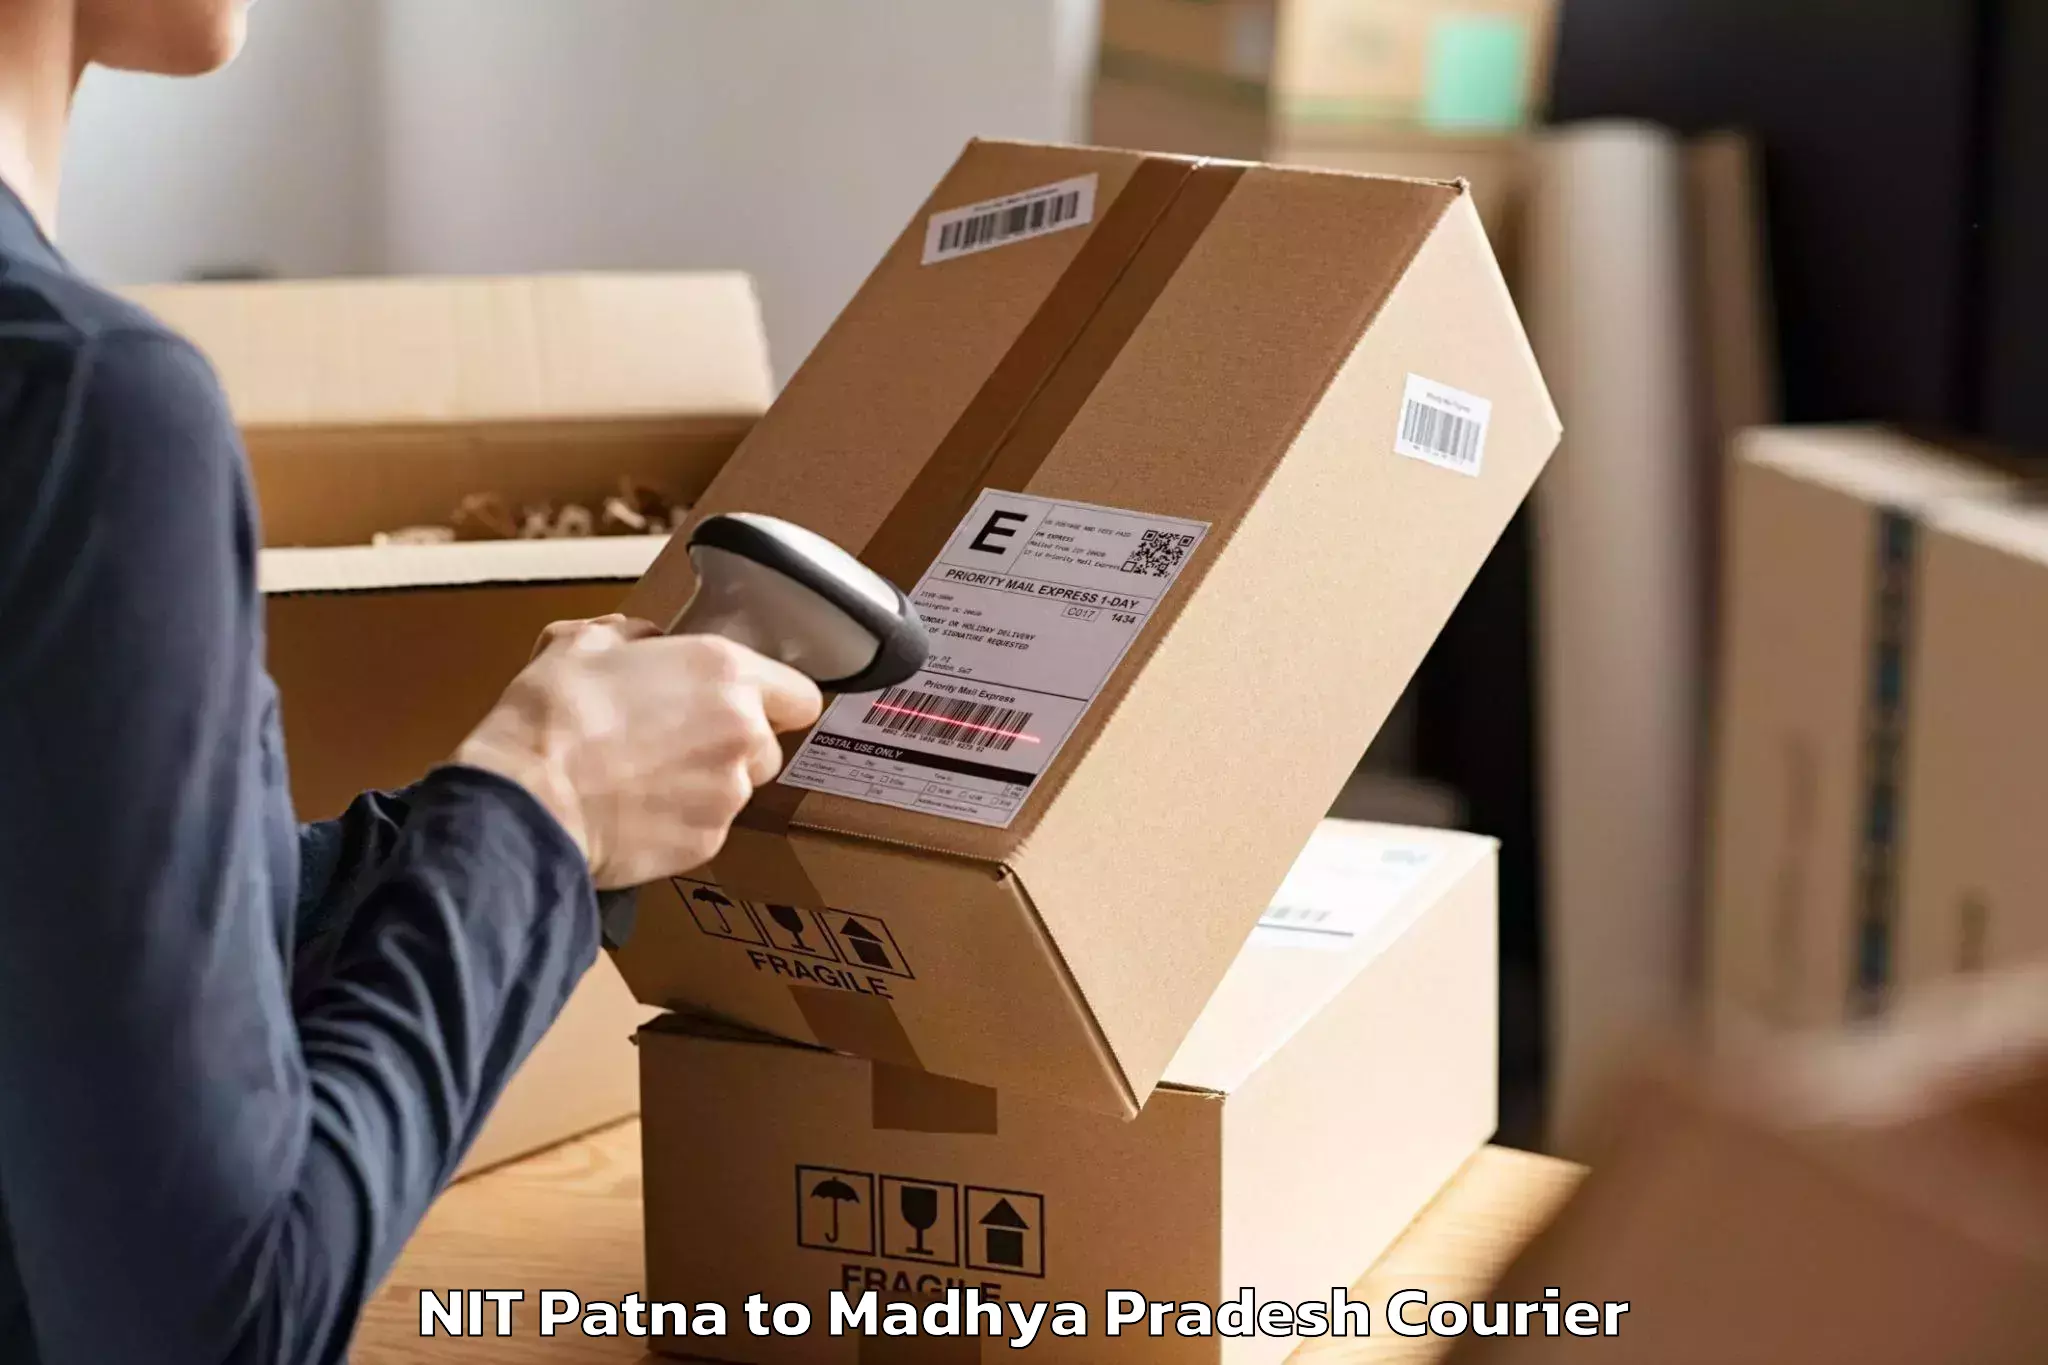 Furniture transport experts NIT Patna to Chhindwara